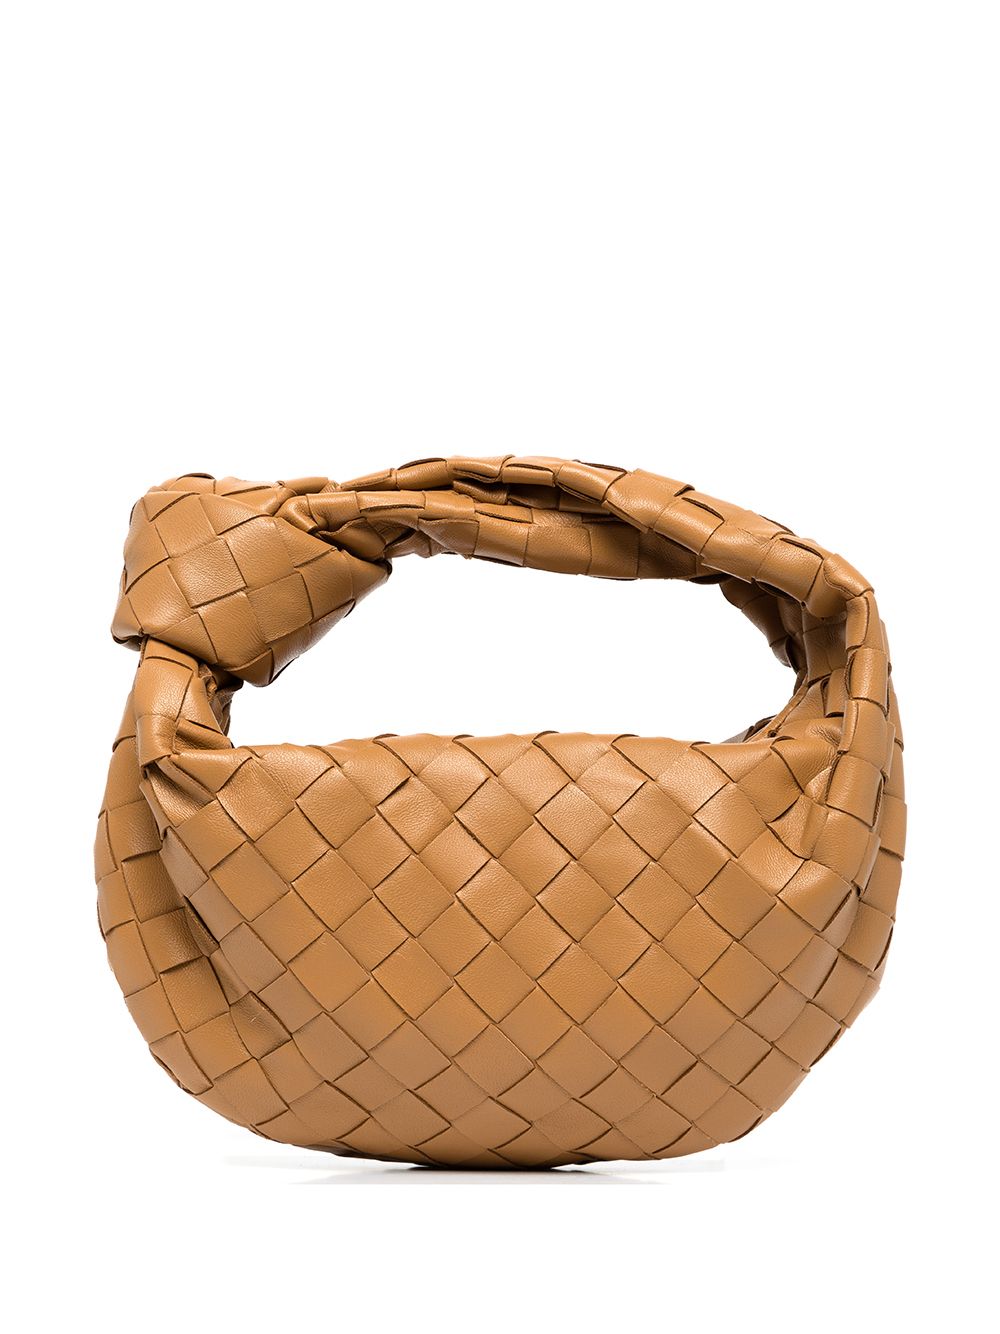 фото Bottega veneta сумка jodie с плетением intrecciato